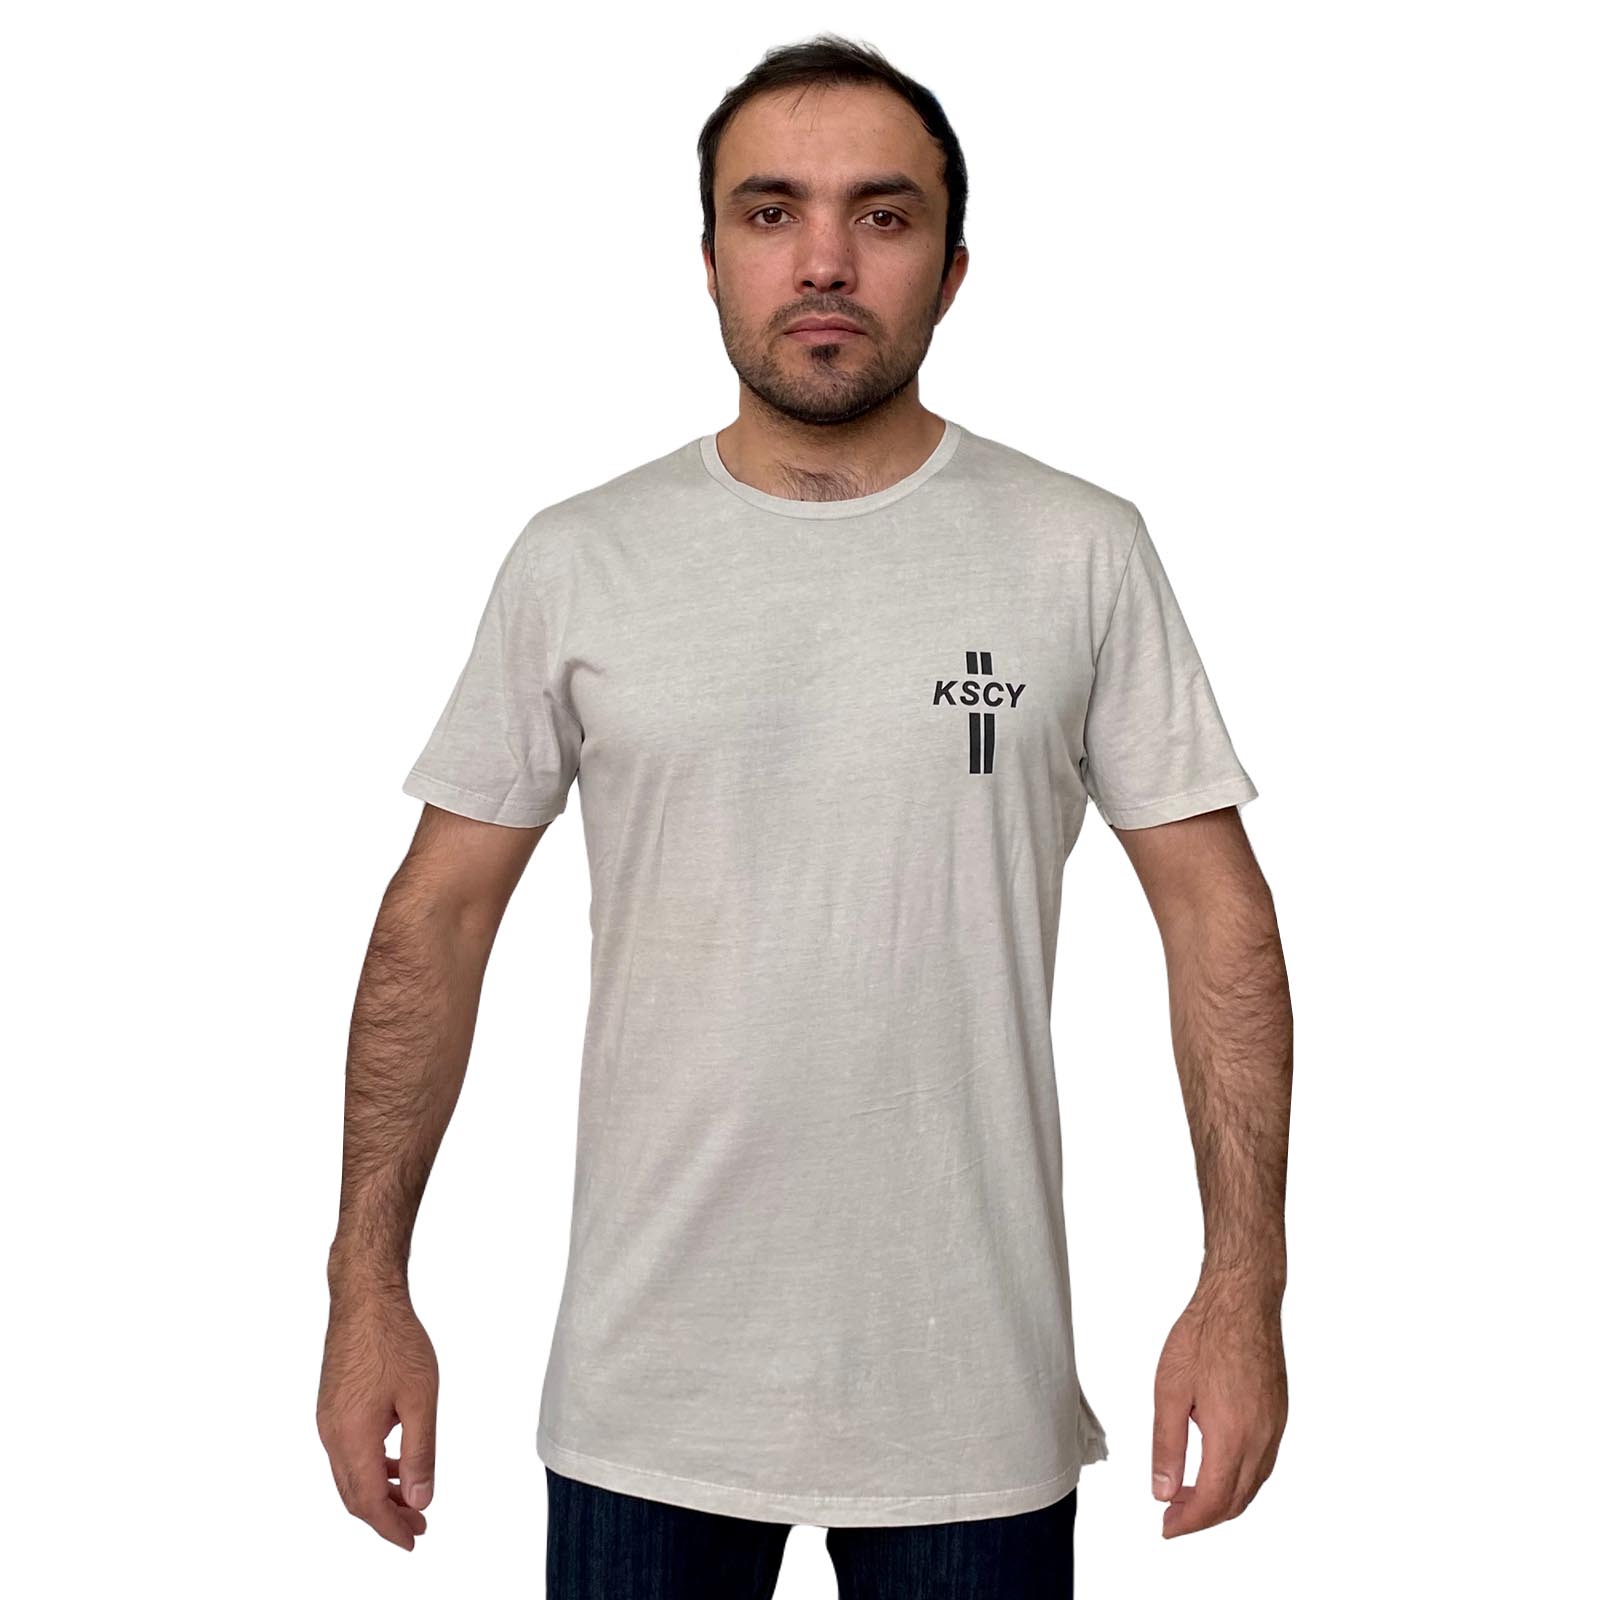 Фирменная мужская футболка KSCY